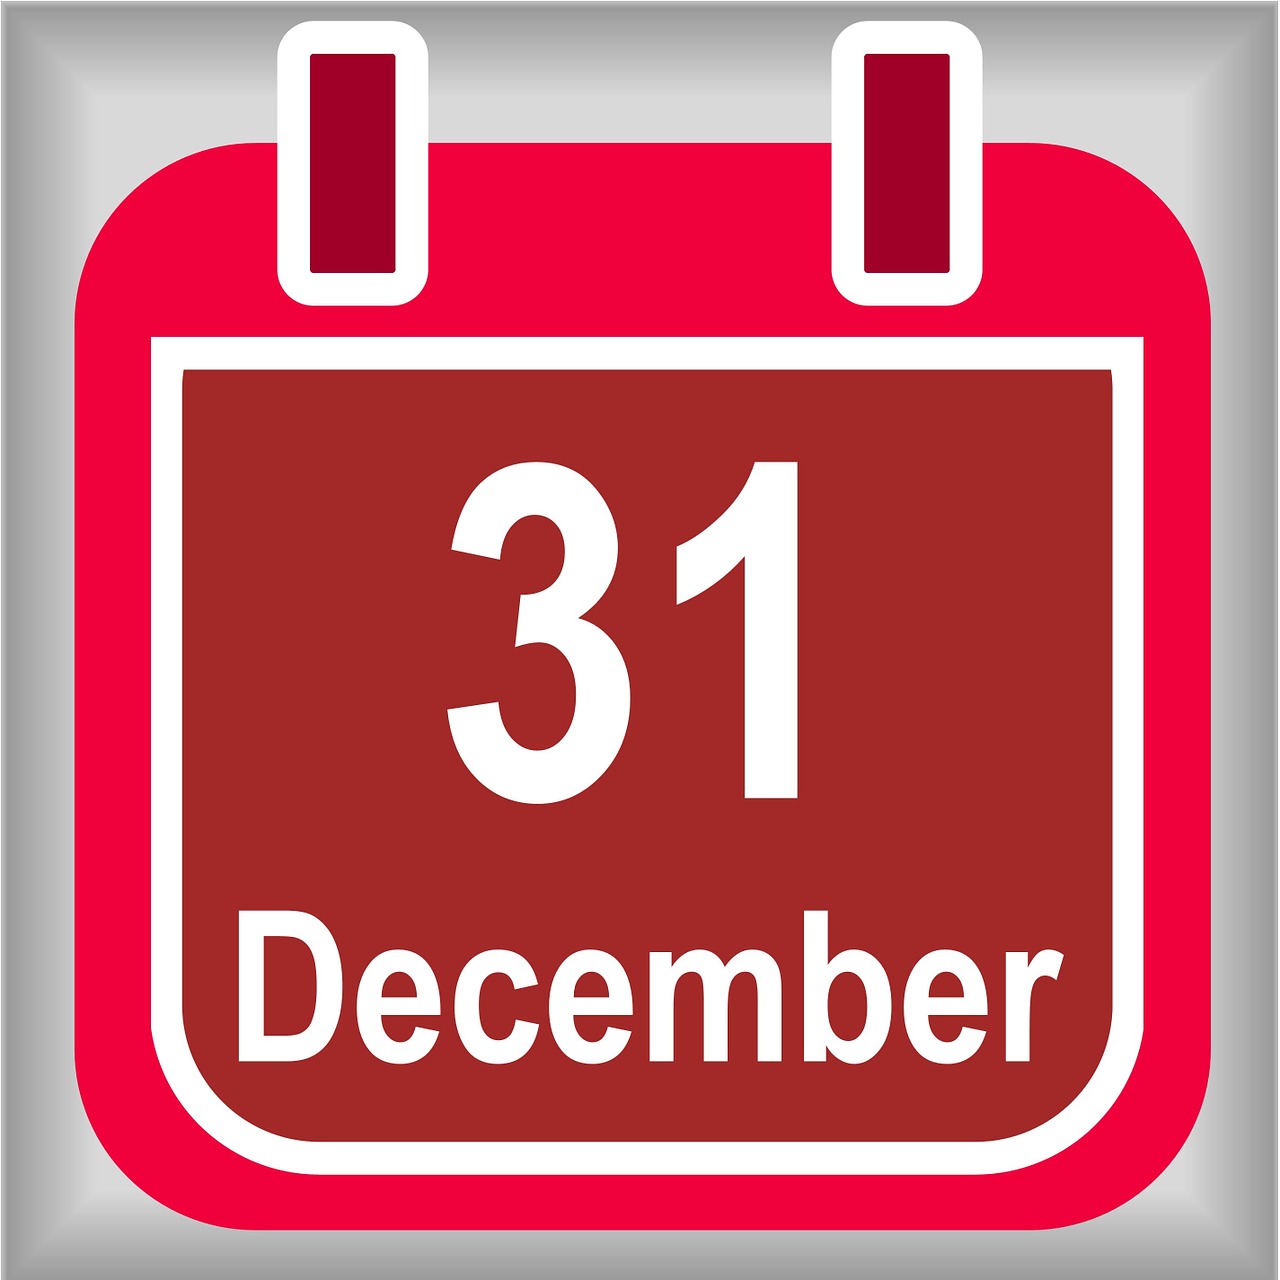 Gruodžio 31 D ., Kalendorius, Raudona, Gruodžio Mėn ., Data, Diena, Mėnuo, Naujieji Metai, Išvakarės, Naujųjų Metų Vakaras